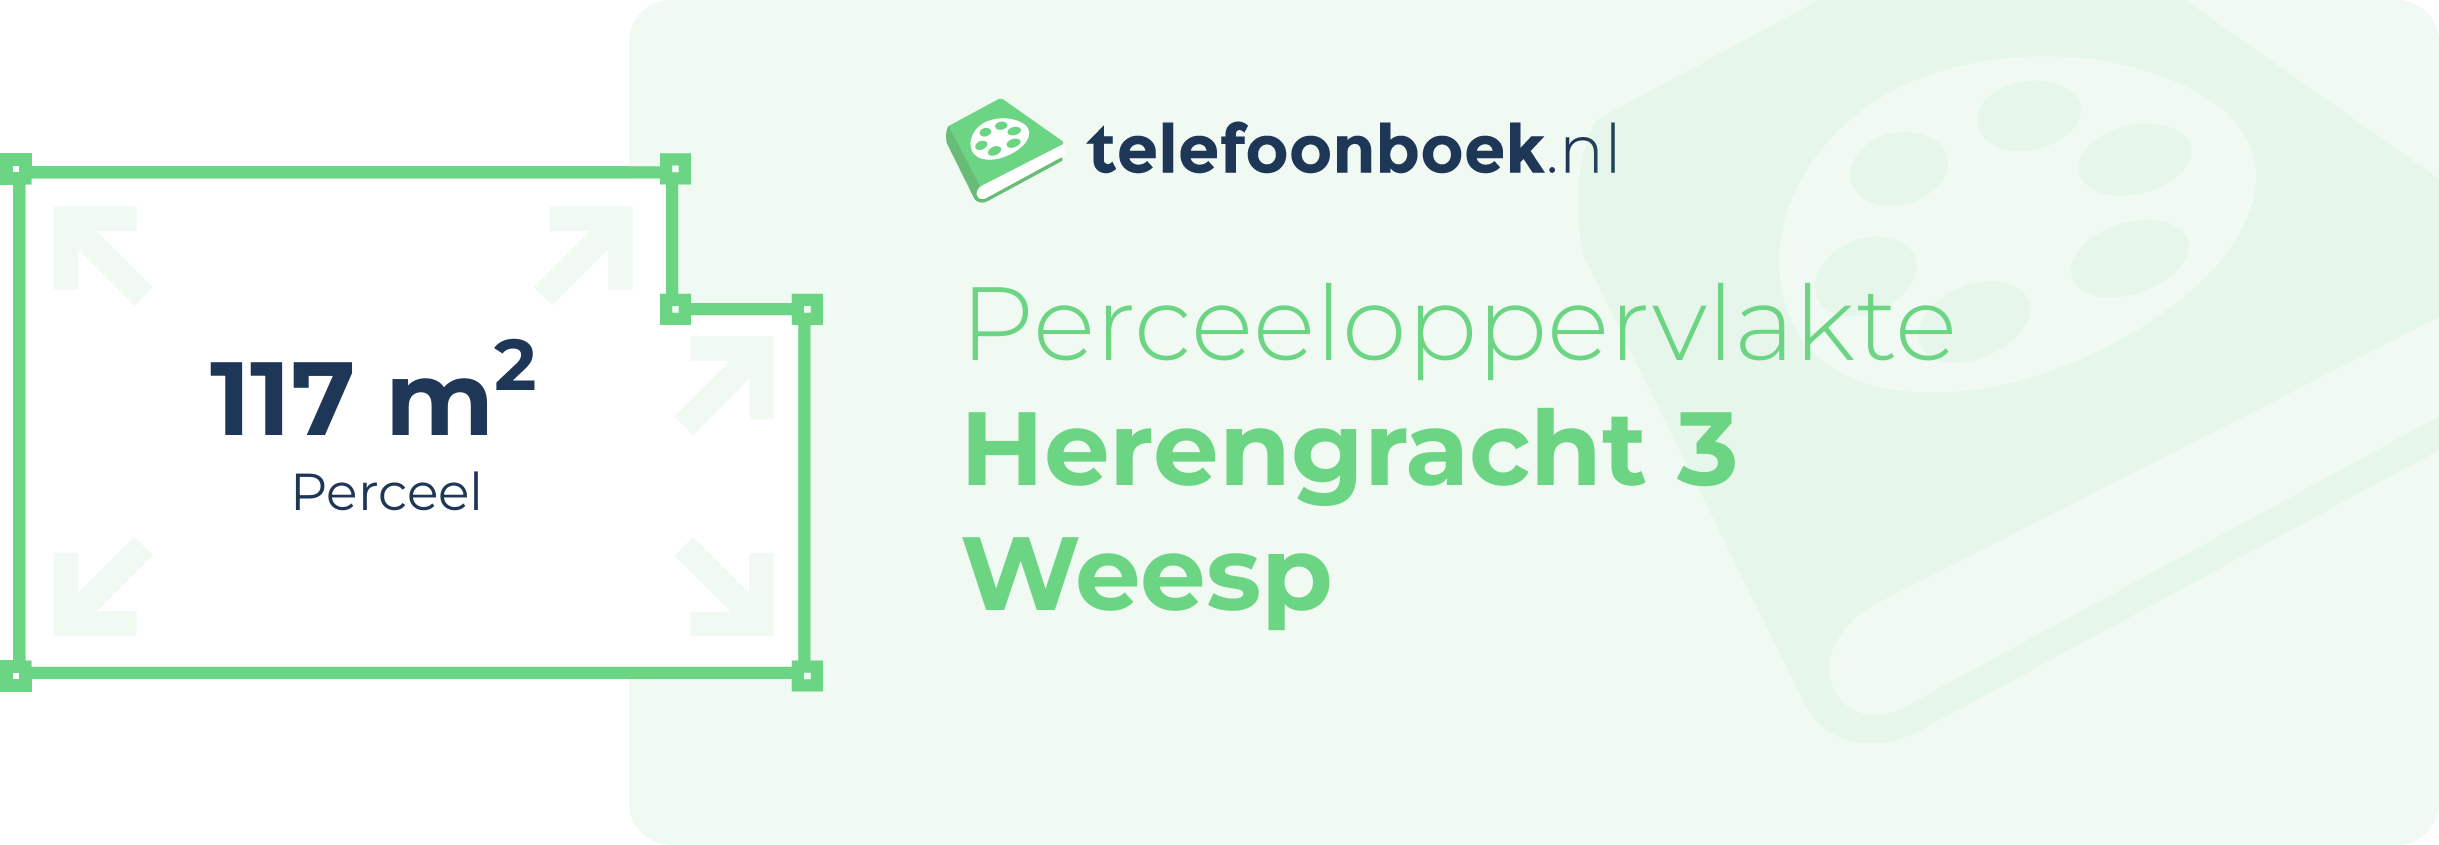 Perceeloppervlakte Herengracht 3 Weesp